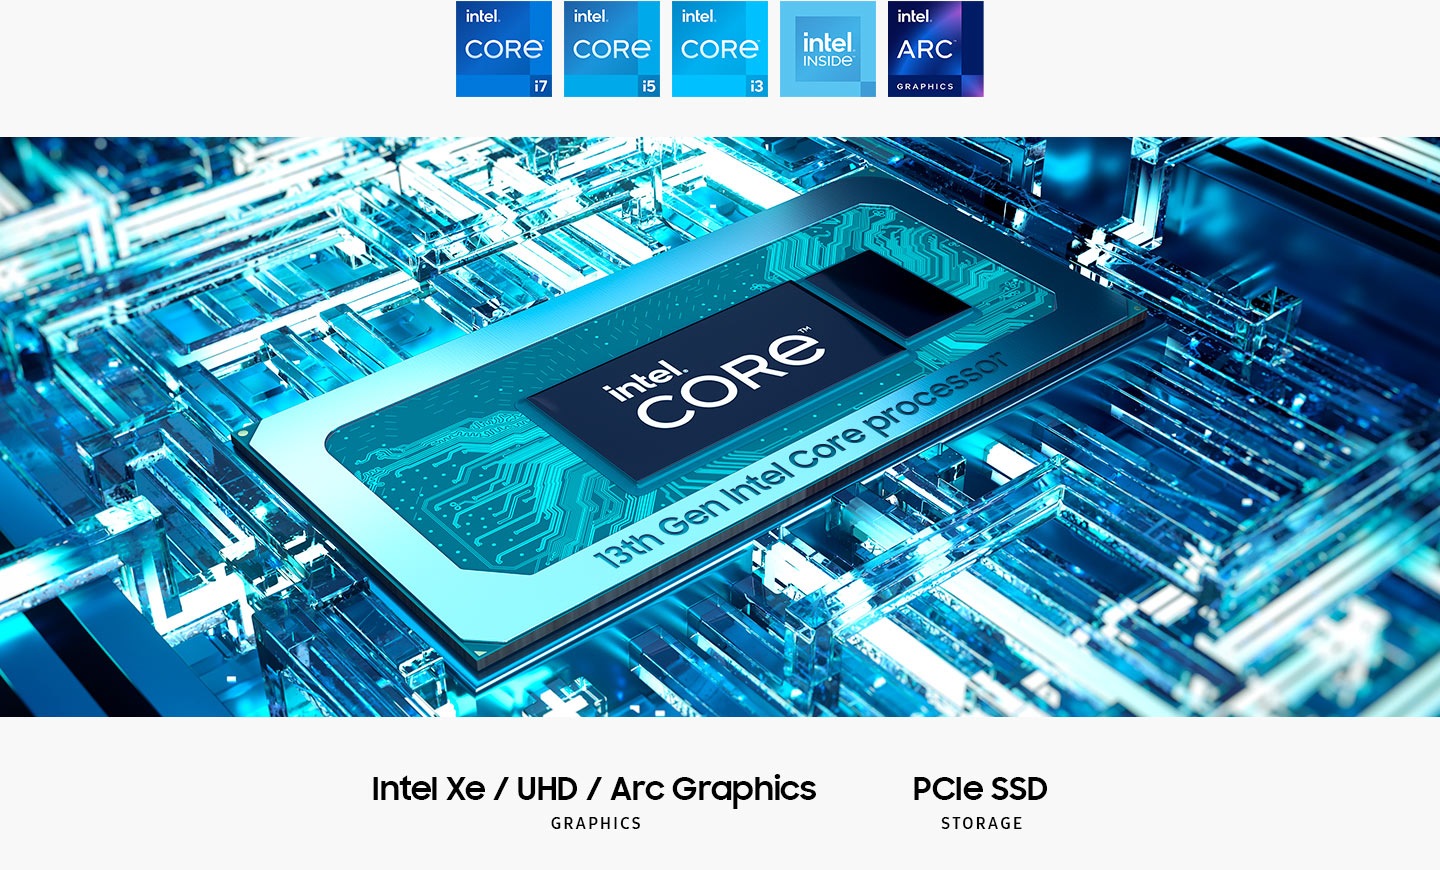 El procesador Intel® Core ™ de la 13a generación está en la placa base con el texto Intel® Core ™ en el medio. Intel XE / UHD / Arc Graphics. Almacenamiento SSD PCIe. Se muestran los logotipos Intel Core i7, Intel Core i5, Intel Core i3, Intel Inside y Intel Arc Graphics